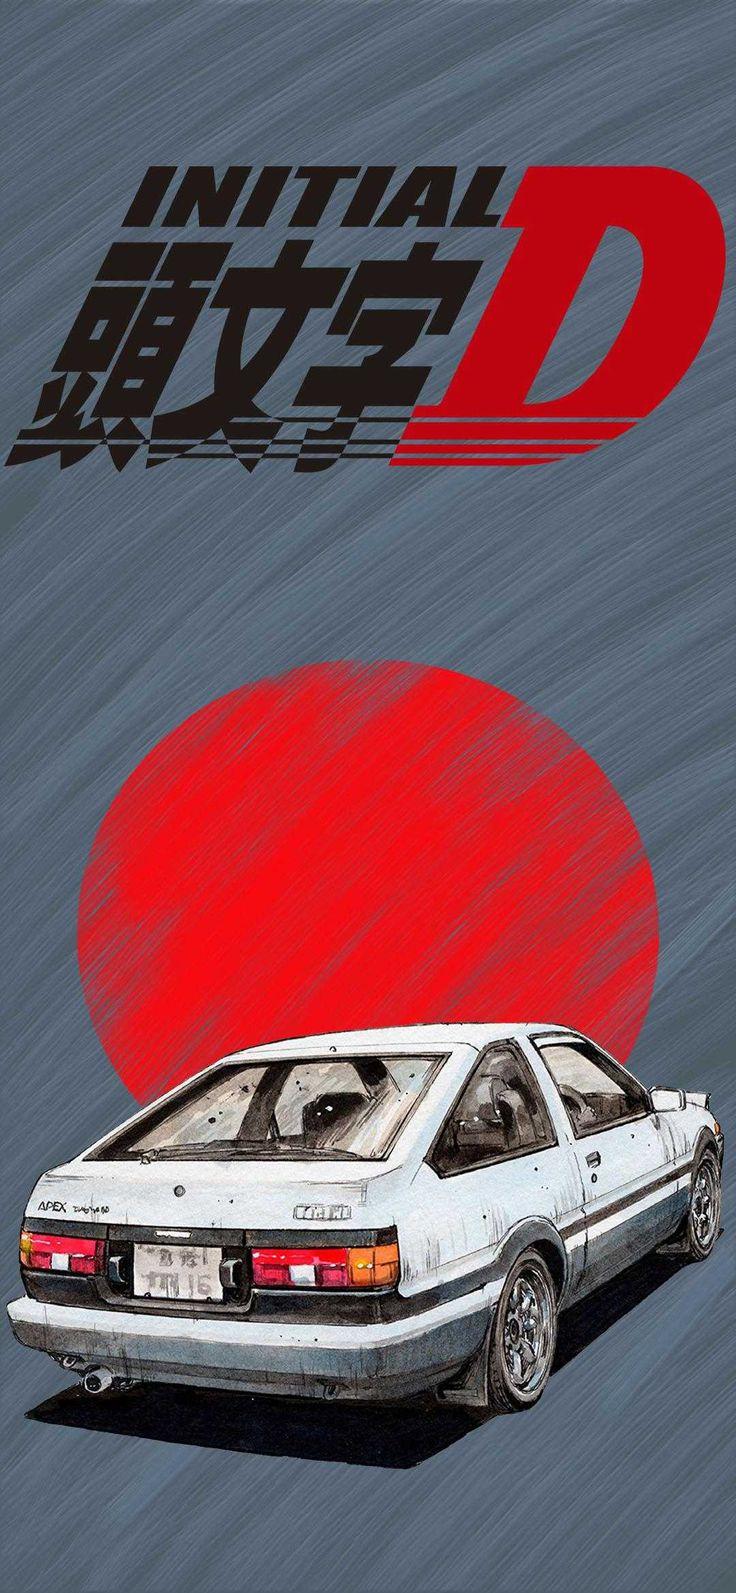 Initial D Wallpaper Discover more Anime Initial D Manga Racing